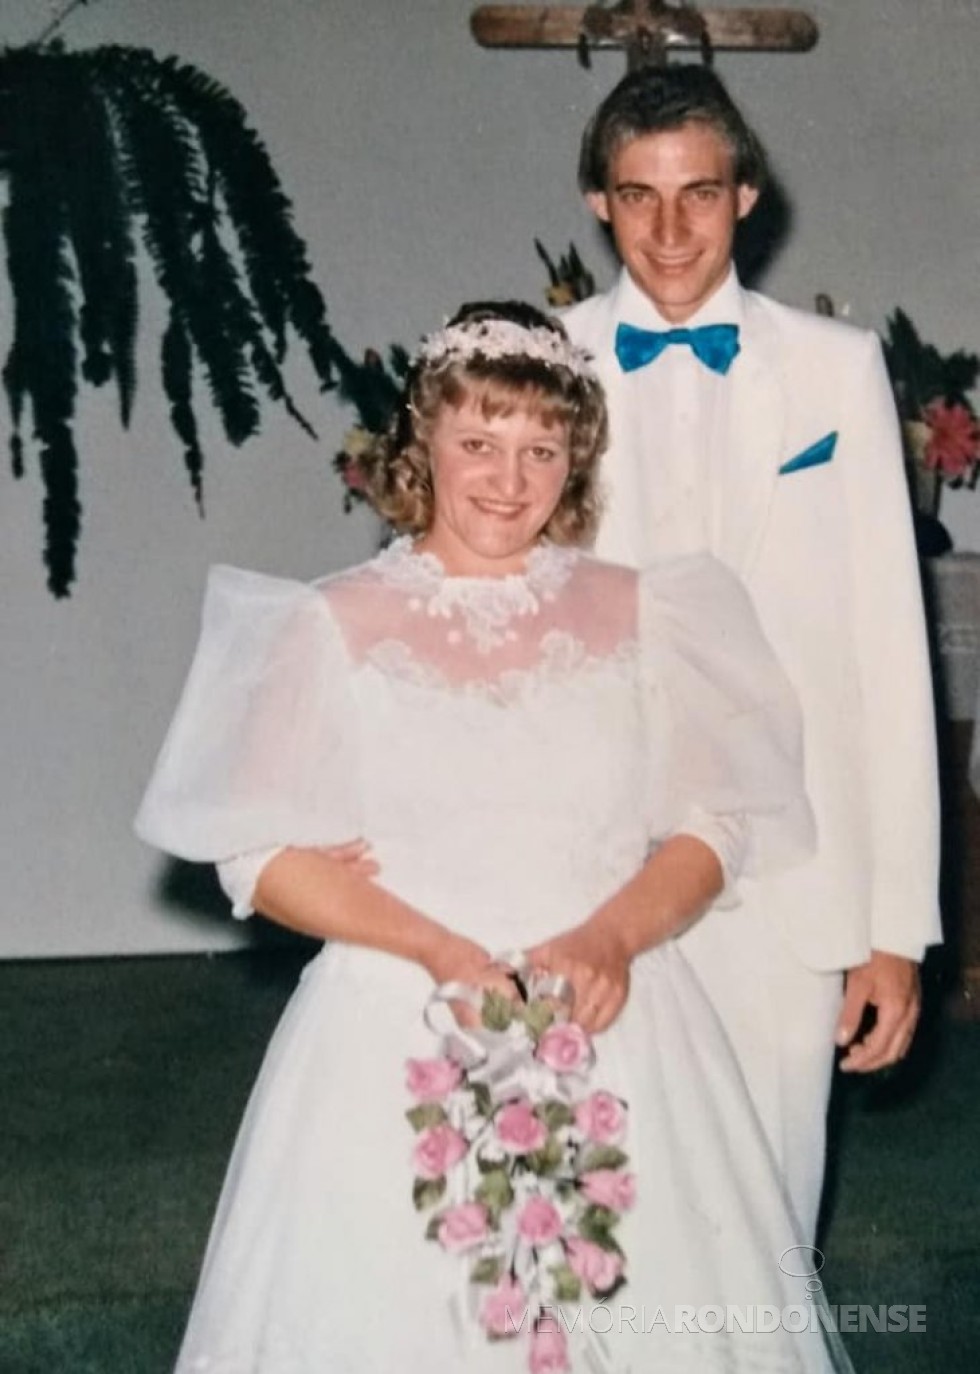 Noivos Roselene Zimmermann e Semildo Laske que se casdaram em junho de 1988.
Imagem: Acervo do casal - FOTO 9 -